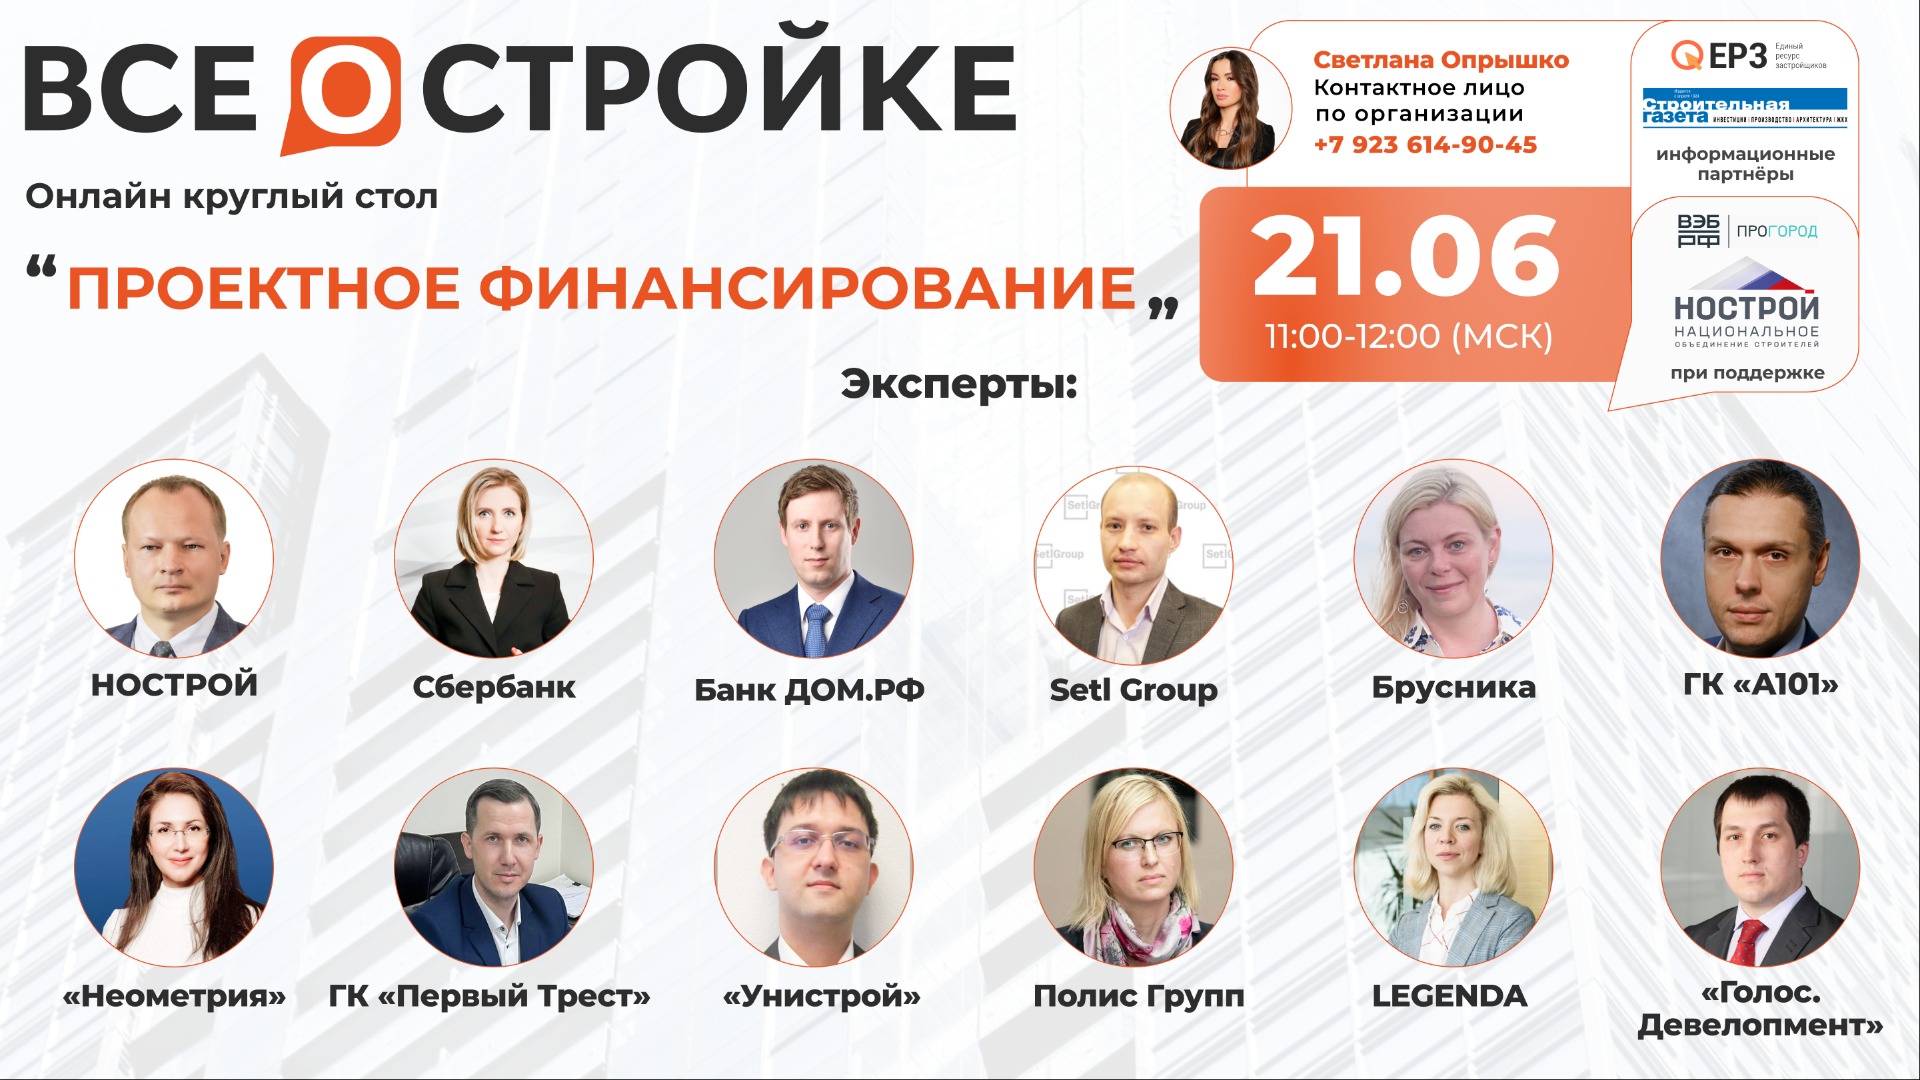 Круглый стол на тему: «Проектное финансирование» 21.06 в 11:00 (МСК)